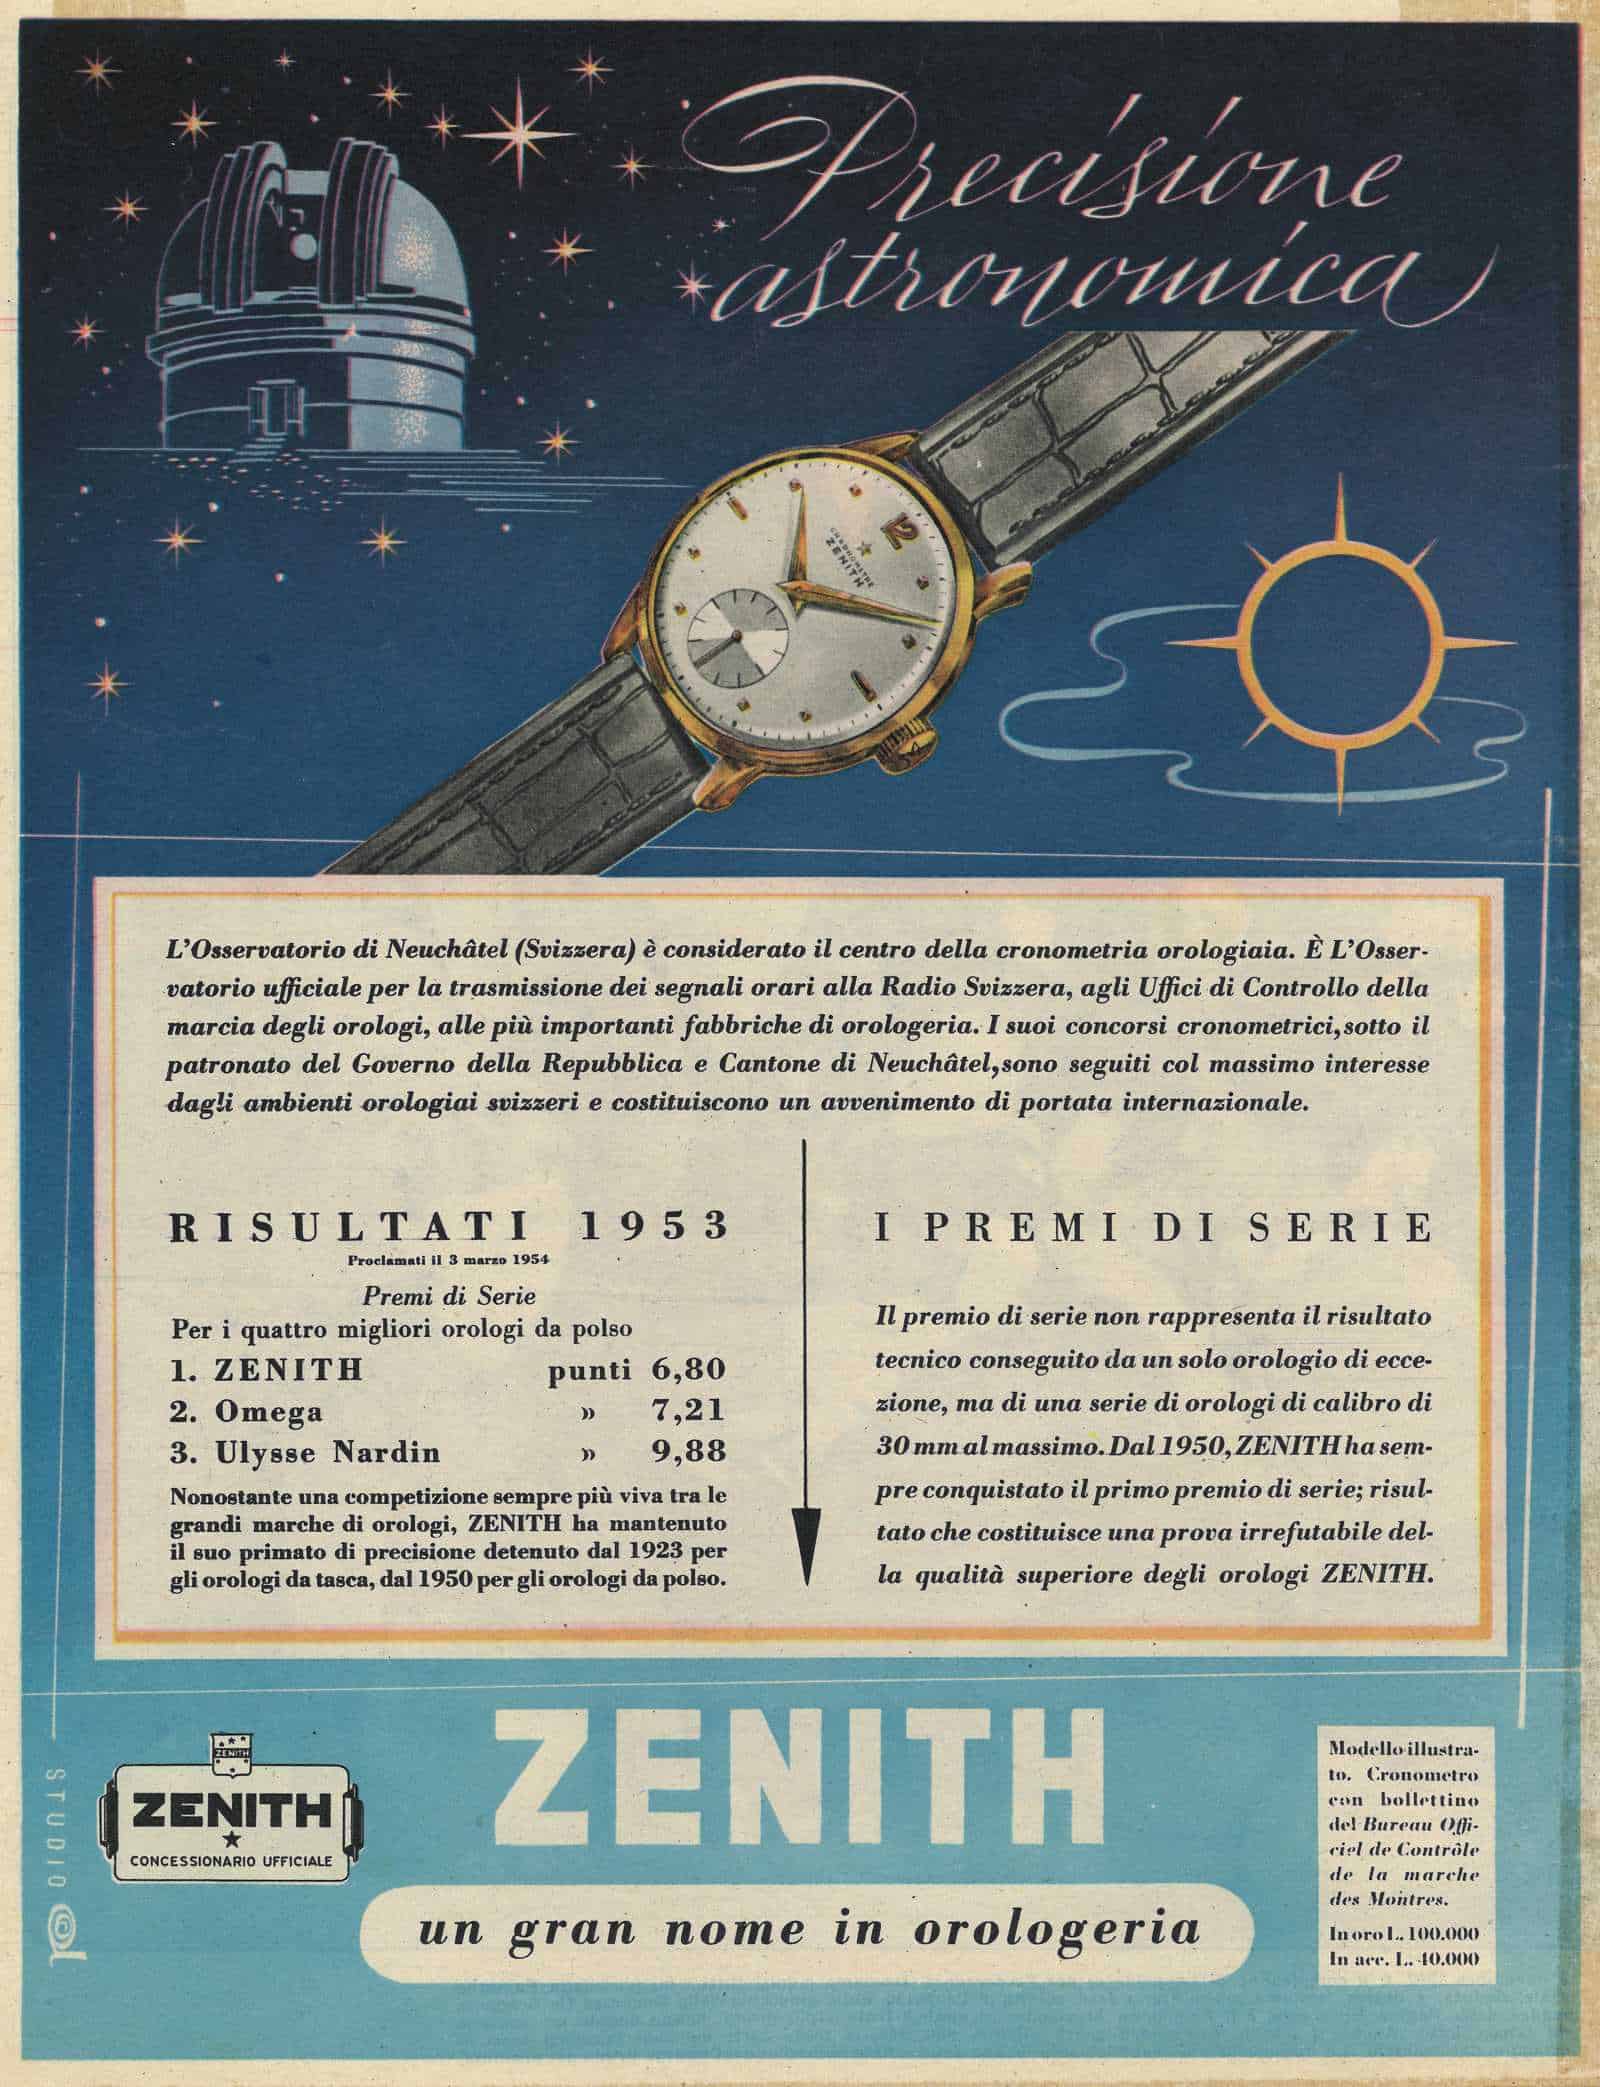 Zenith Kaliber 135-O Anzeige mit dem Bild des Observatoire Neuchatel